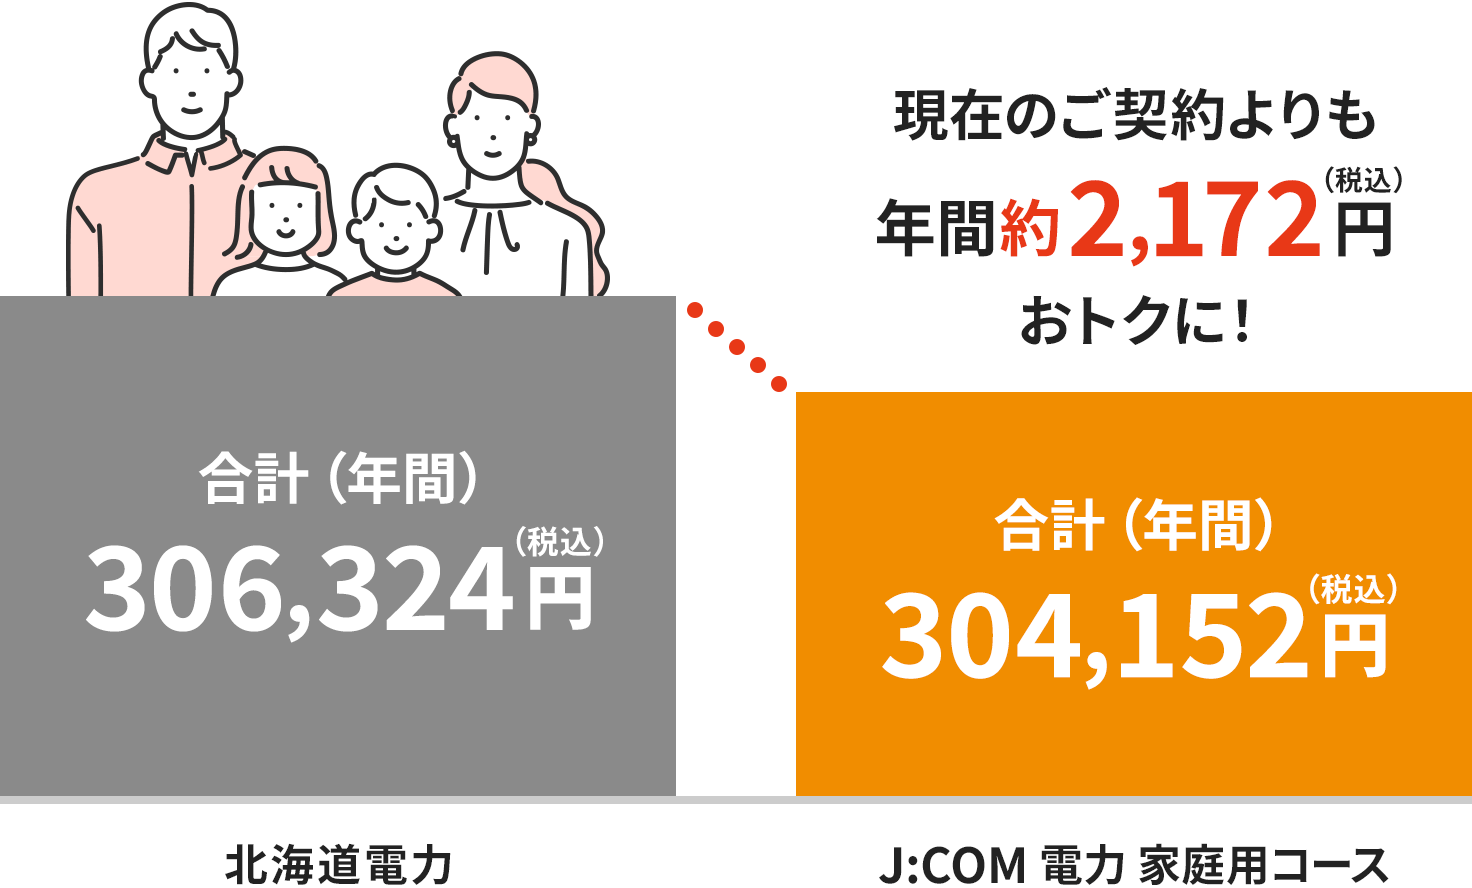 Hình ảnh phí tại khu vực Điện lực Hokkaido (dành cho hộ gia đình 4 người)